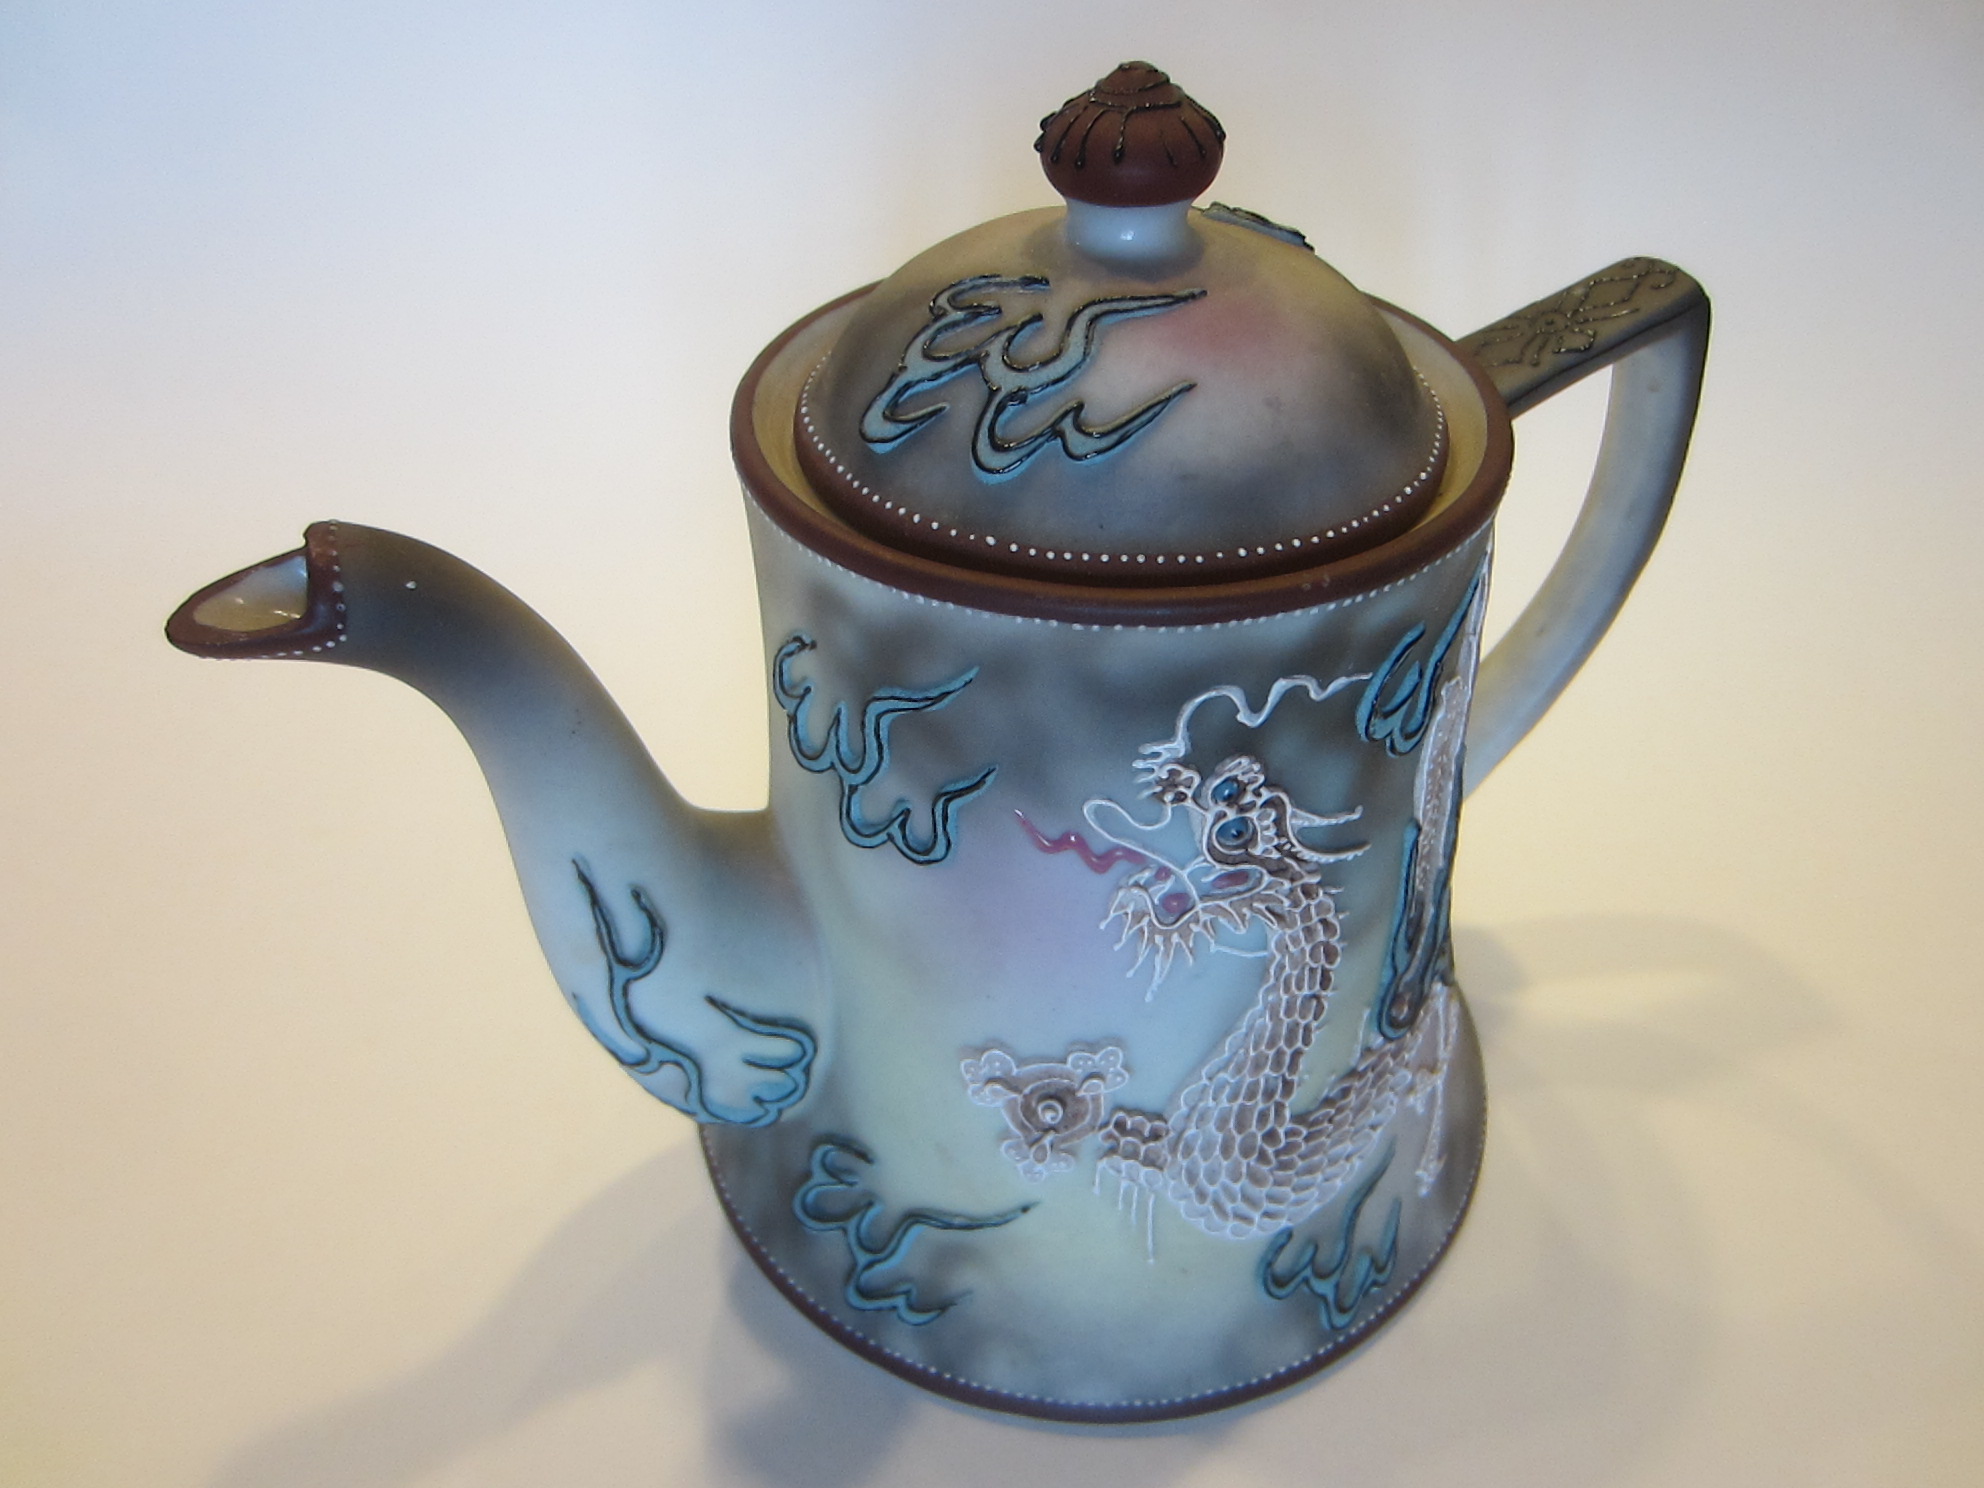 Rituali Domestici Jar with Cup Lid 0.1 x 0.1 x 0.1 cm Multi-Colour Porcelain